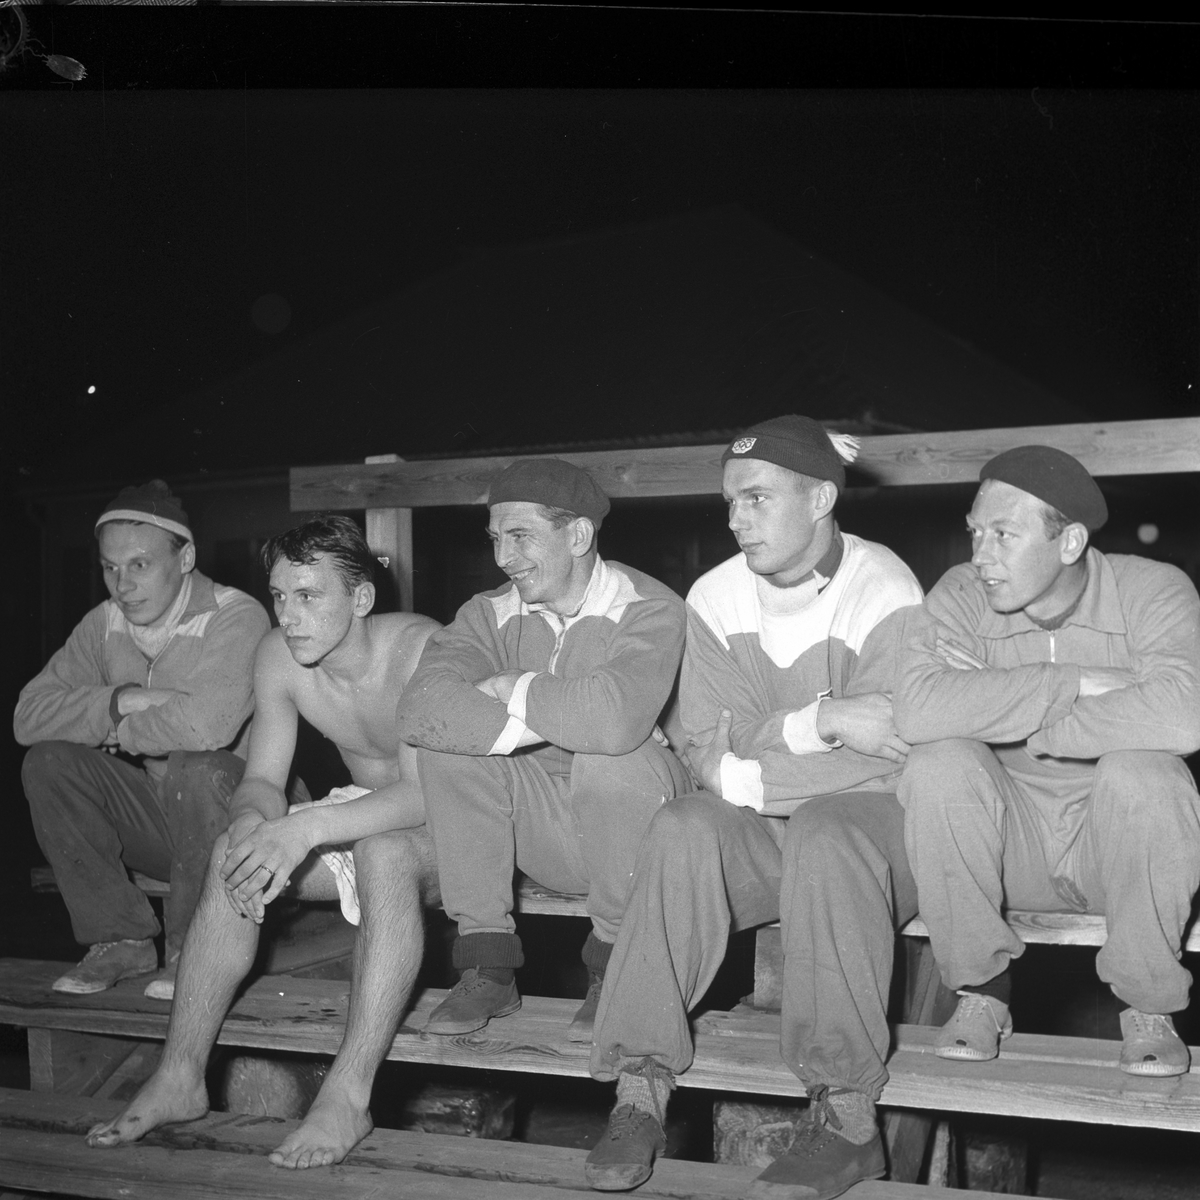 SAIK tränar bandy. Från vänster "Nicko" Andersson, Kjell Edlund, Einar Ask, Gunnar Åberg och Agard Magnusson. Reportage för Aftonbladet. Den 29 oktober 1953.

